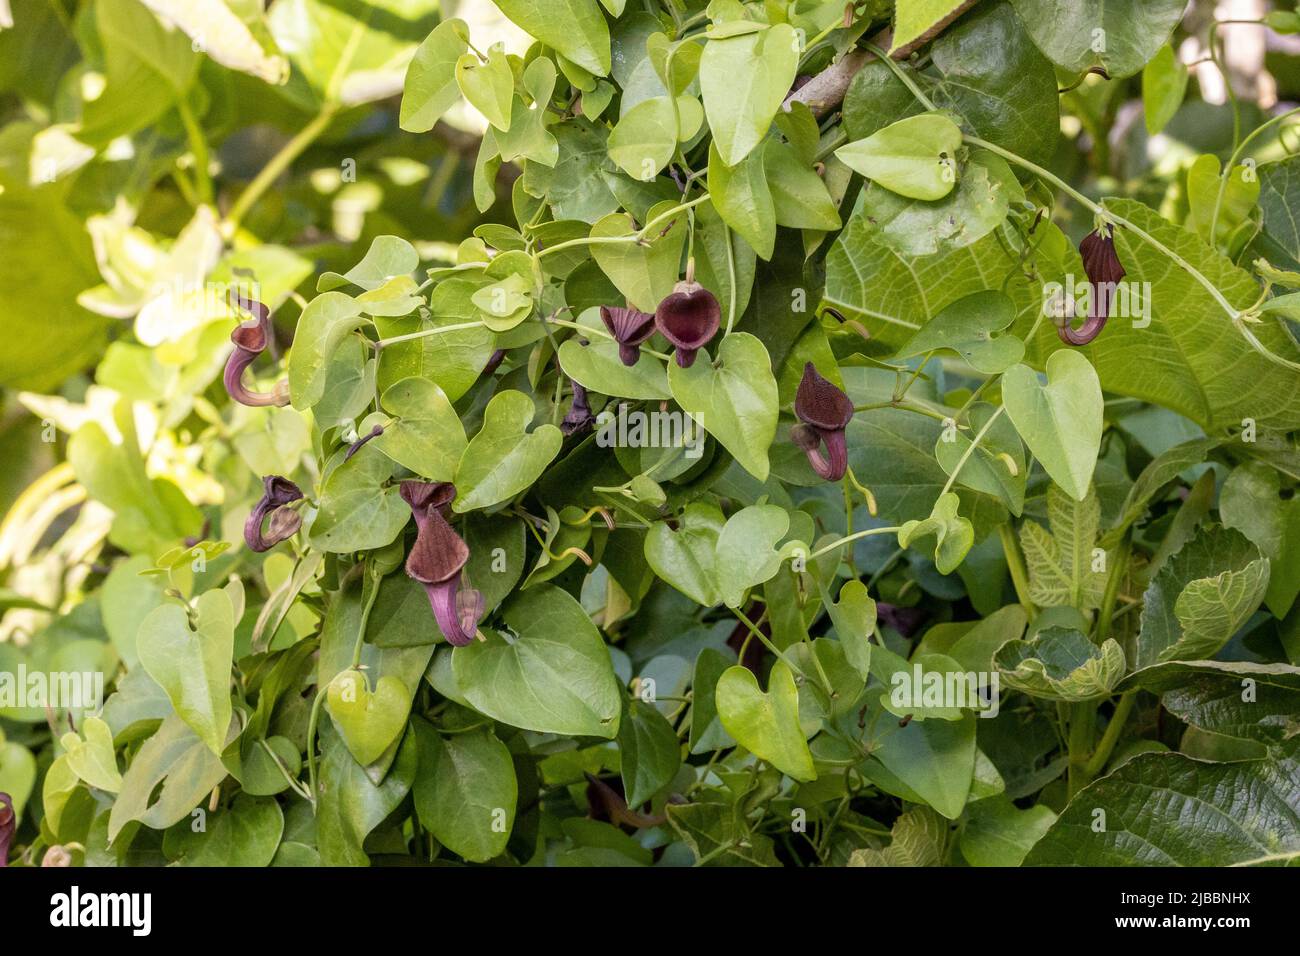 Aristolochia baetica (Aristolochiaceae), bekannt als andalusische Holländerpfeife oder Pfeifenwine. Afro-iberische endemische giftige einheimische Pflanze Stockfoto